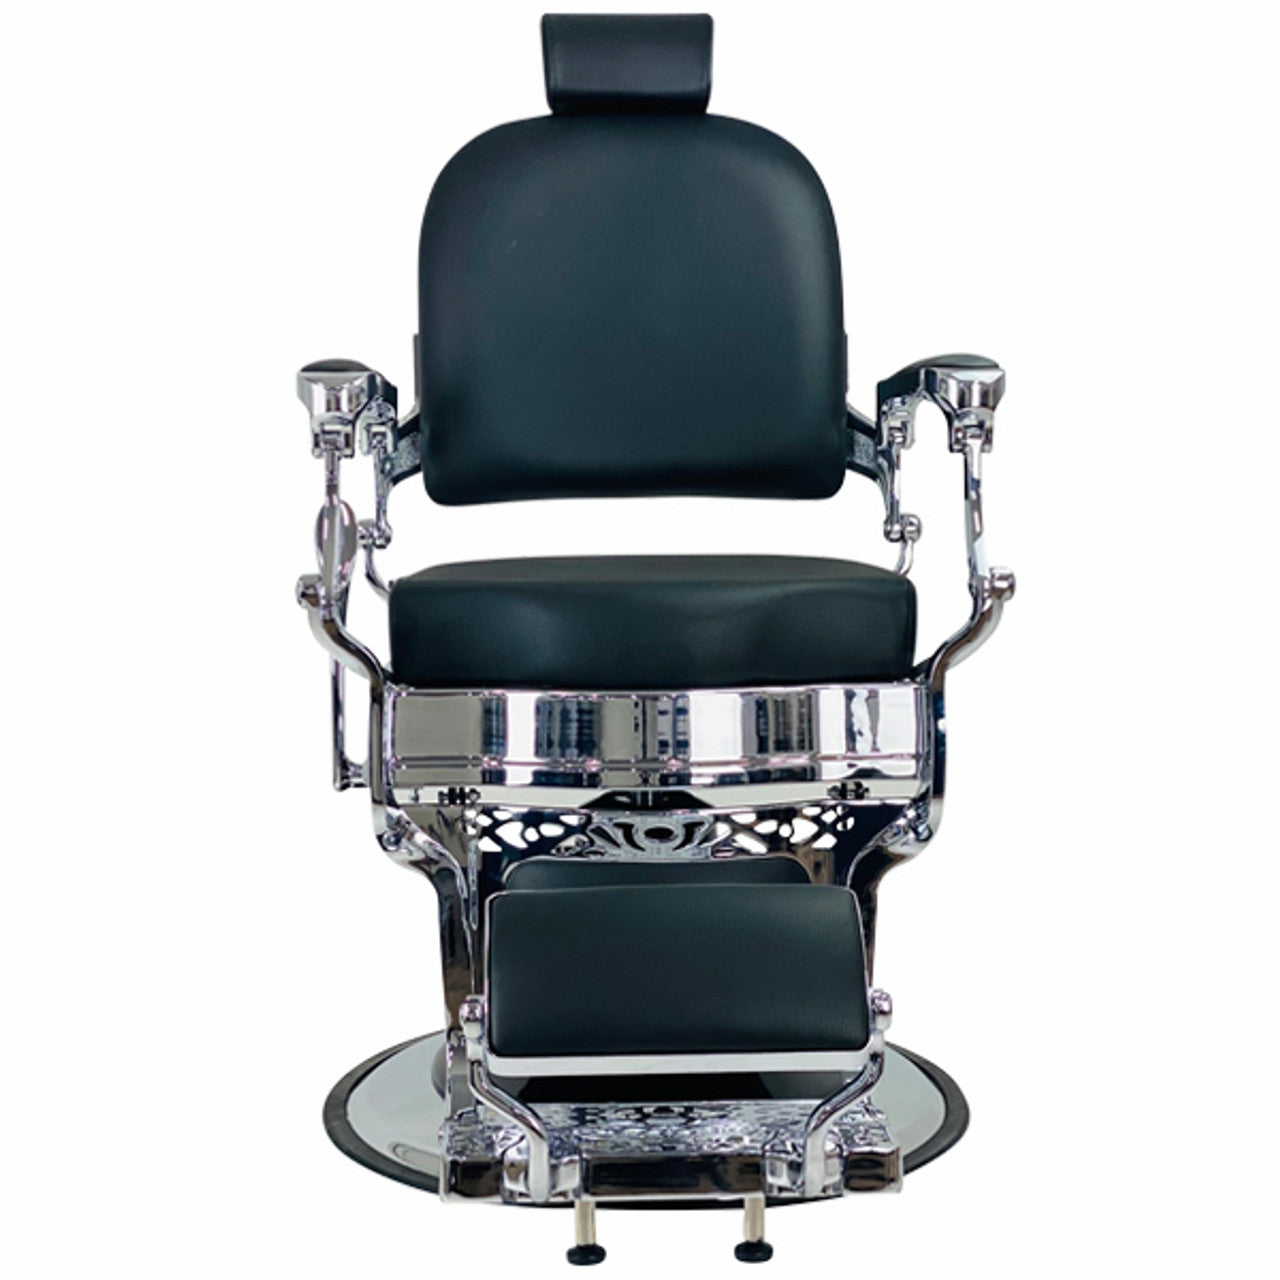 Joiken Havana Barber Chair - Black & Chrome